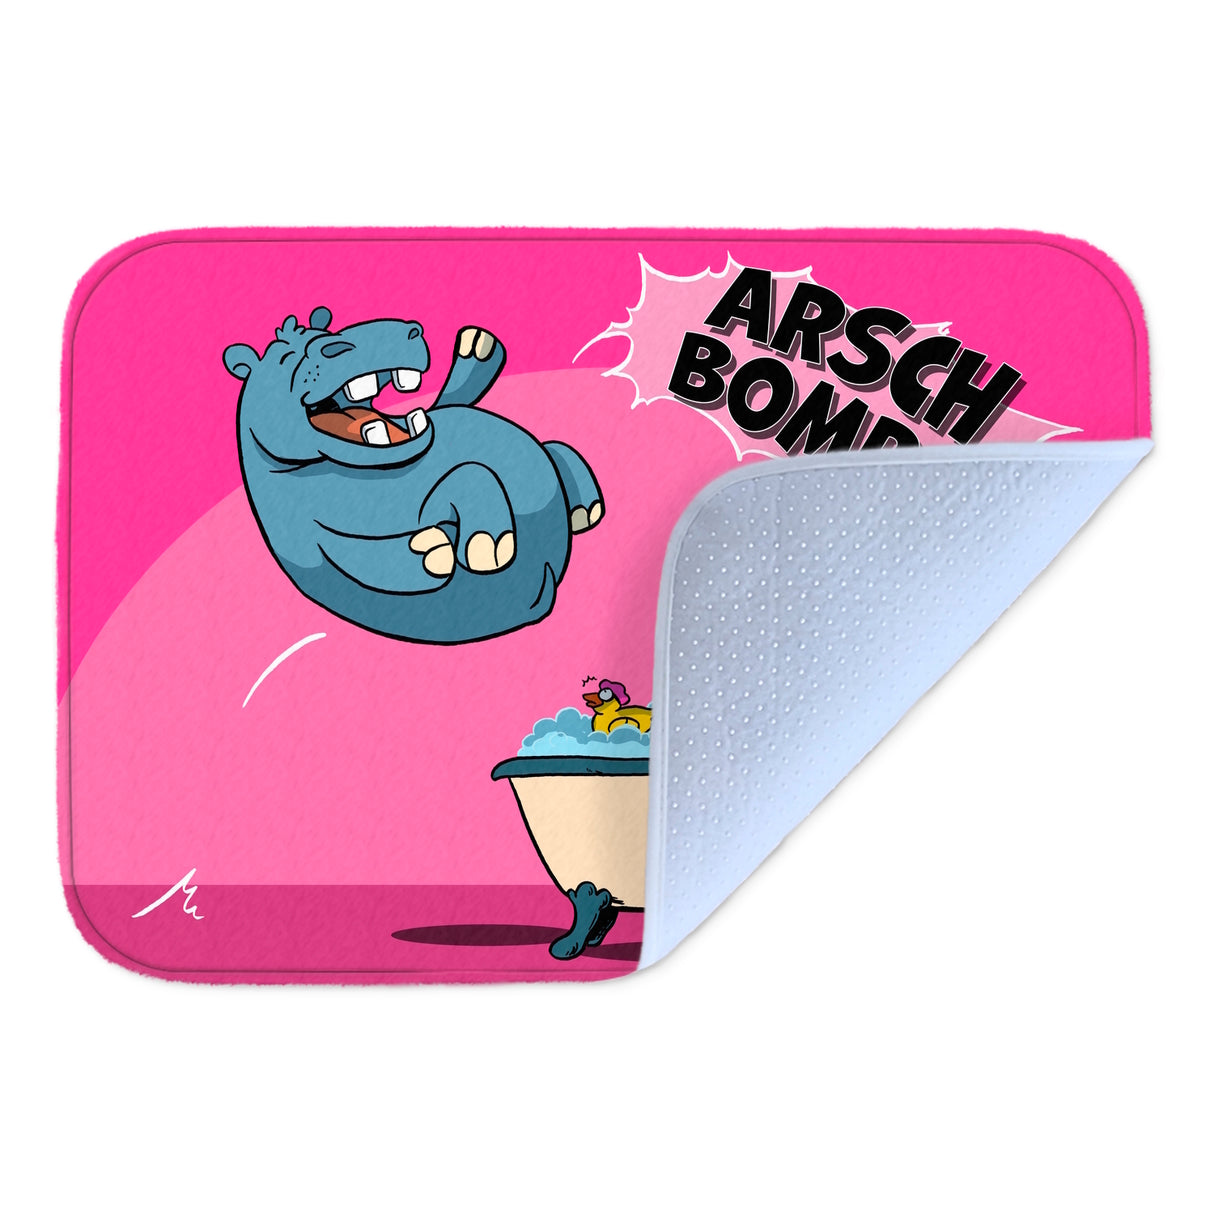 Arschbombe Badematte mit lustigem Comic-Nilpferd und Schaf in pink